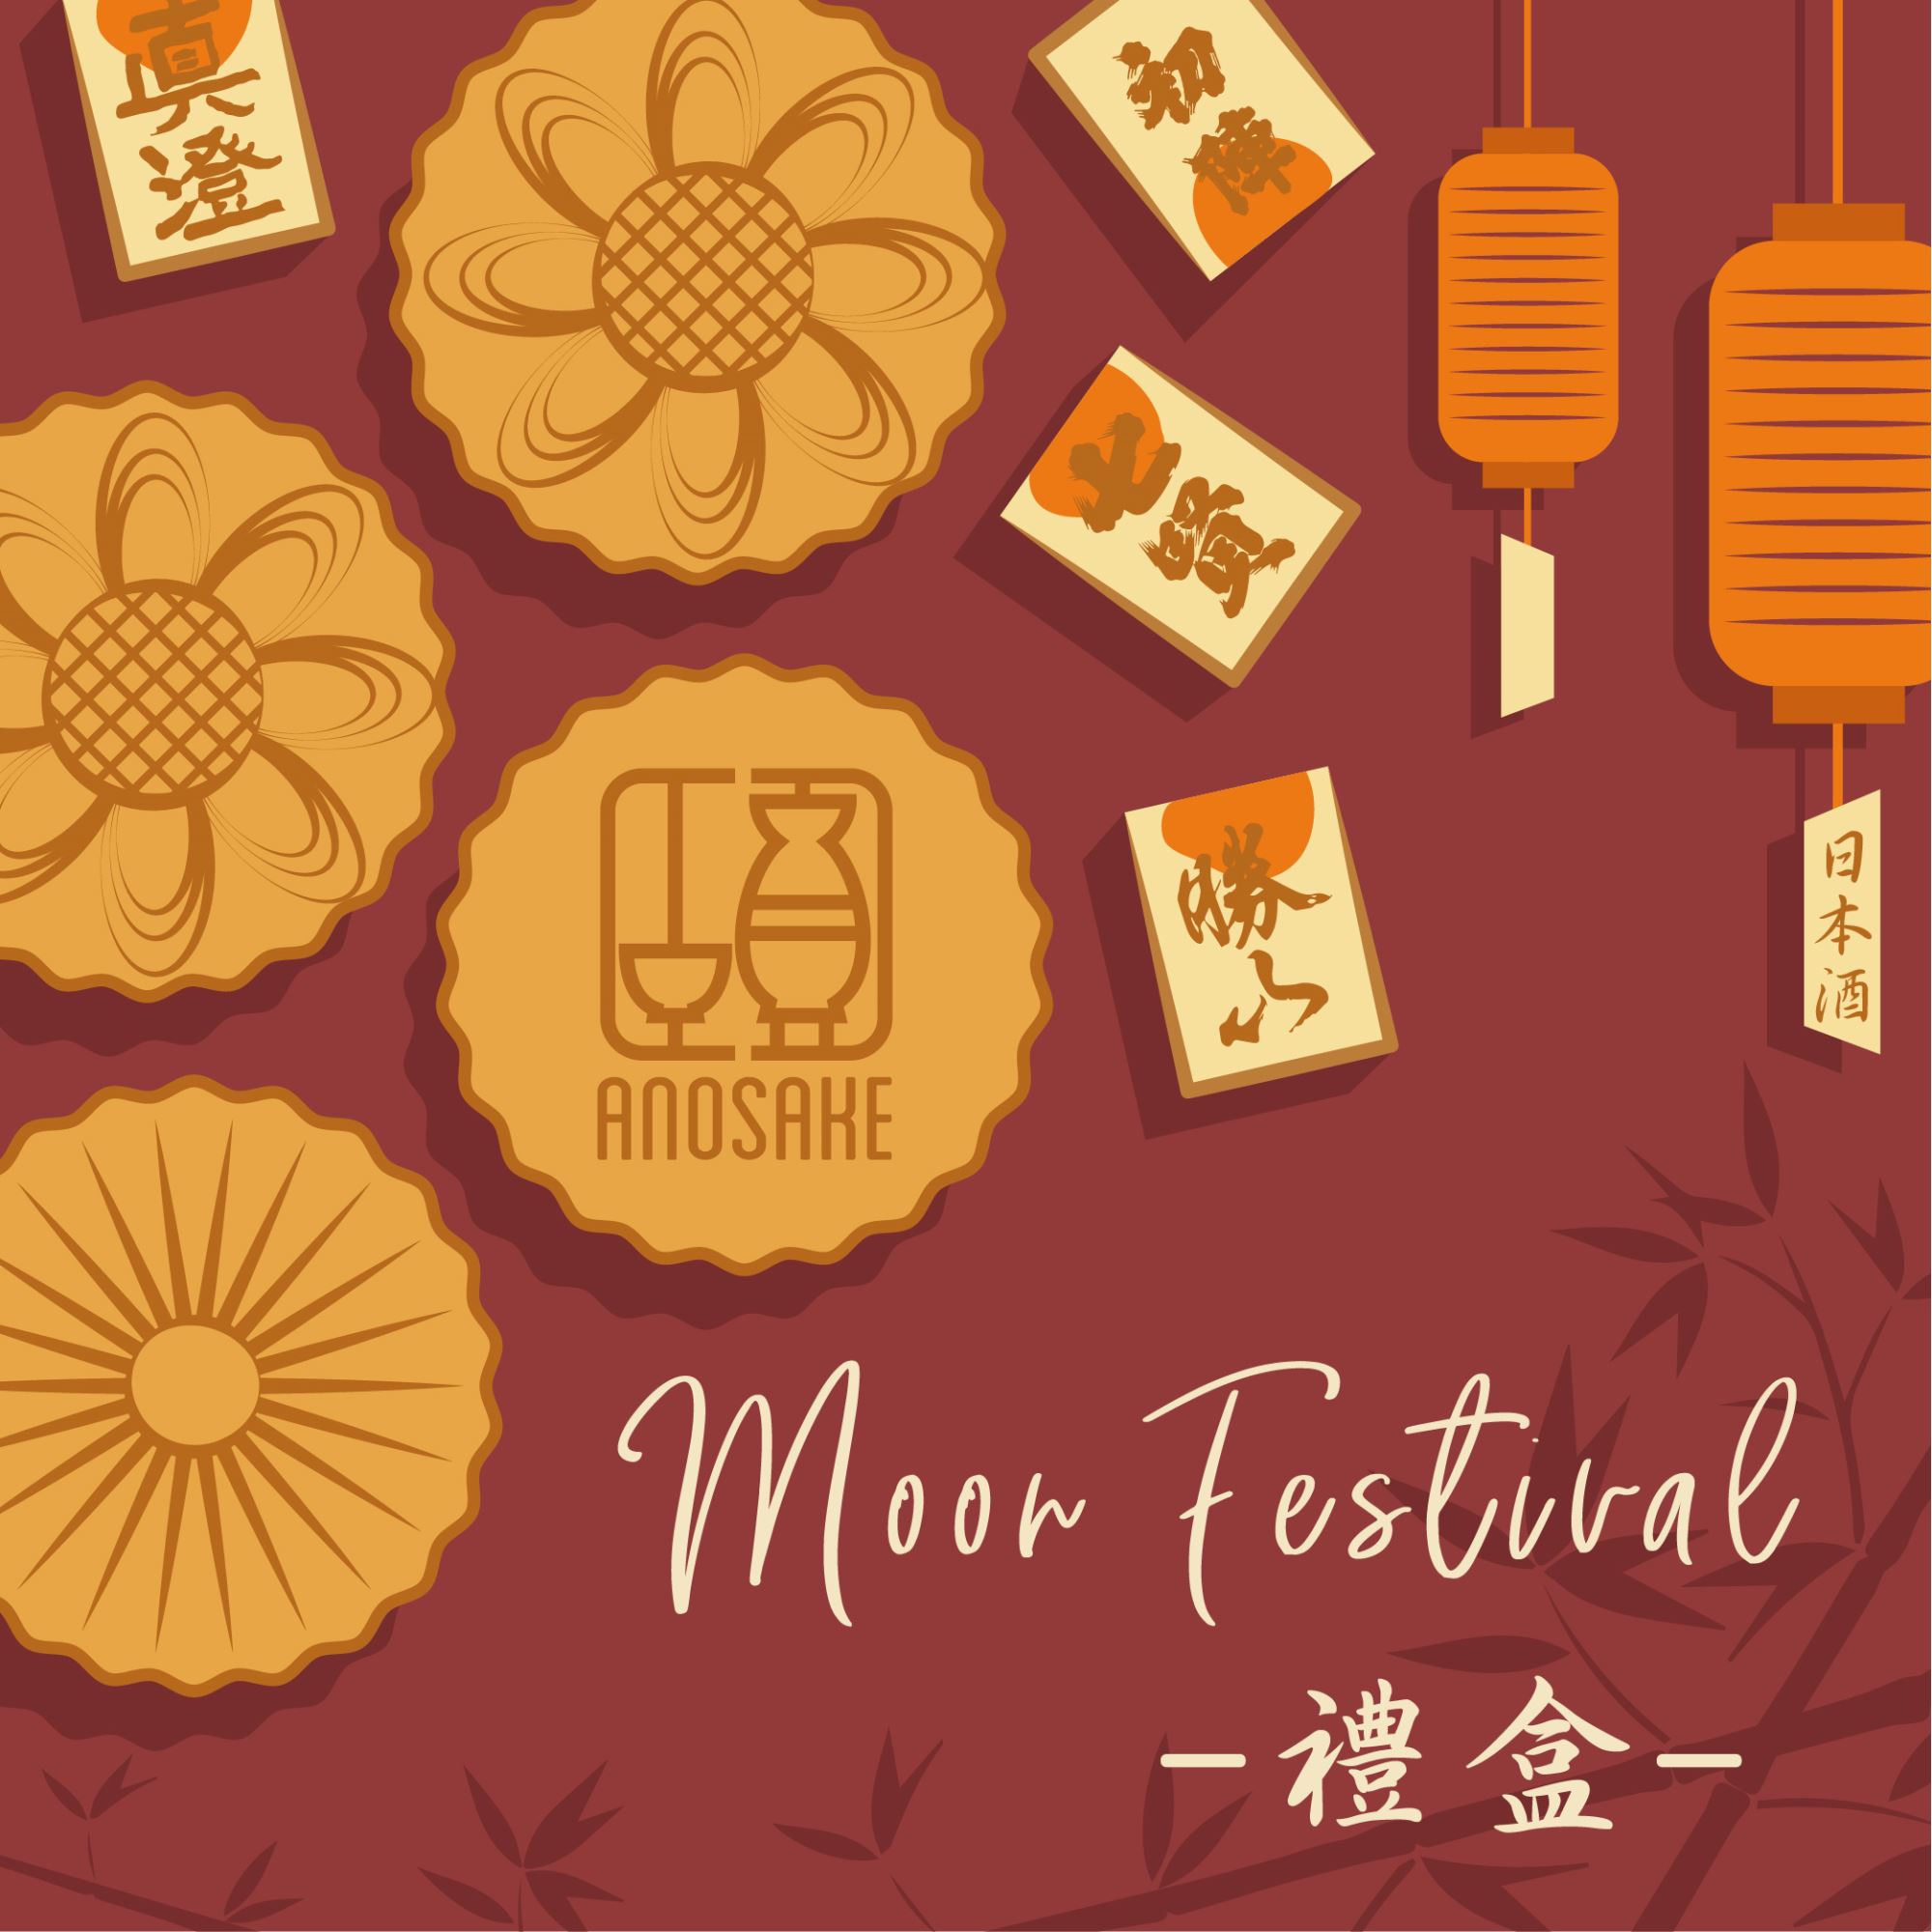 Moon Festival 「日本酒禮盒」 還在為送禮煩惱嗎？ 中秋節日本酒禮盒讓您不再為送什麼煩惱！